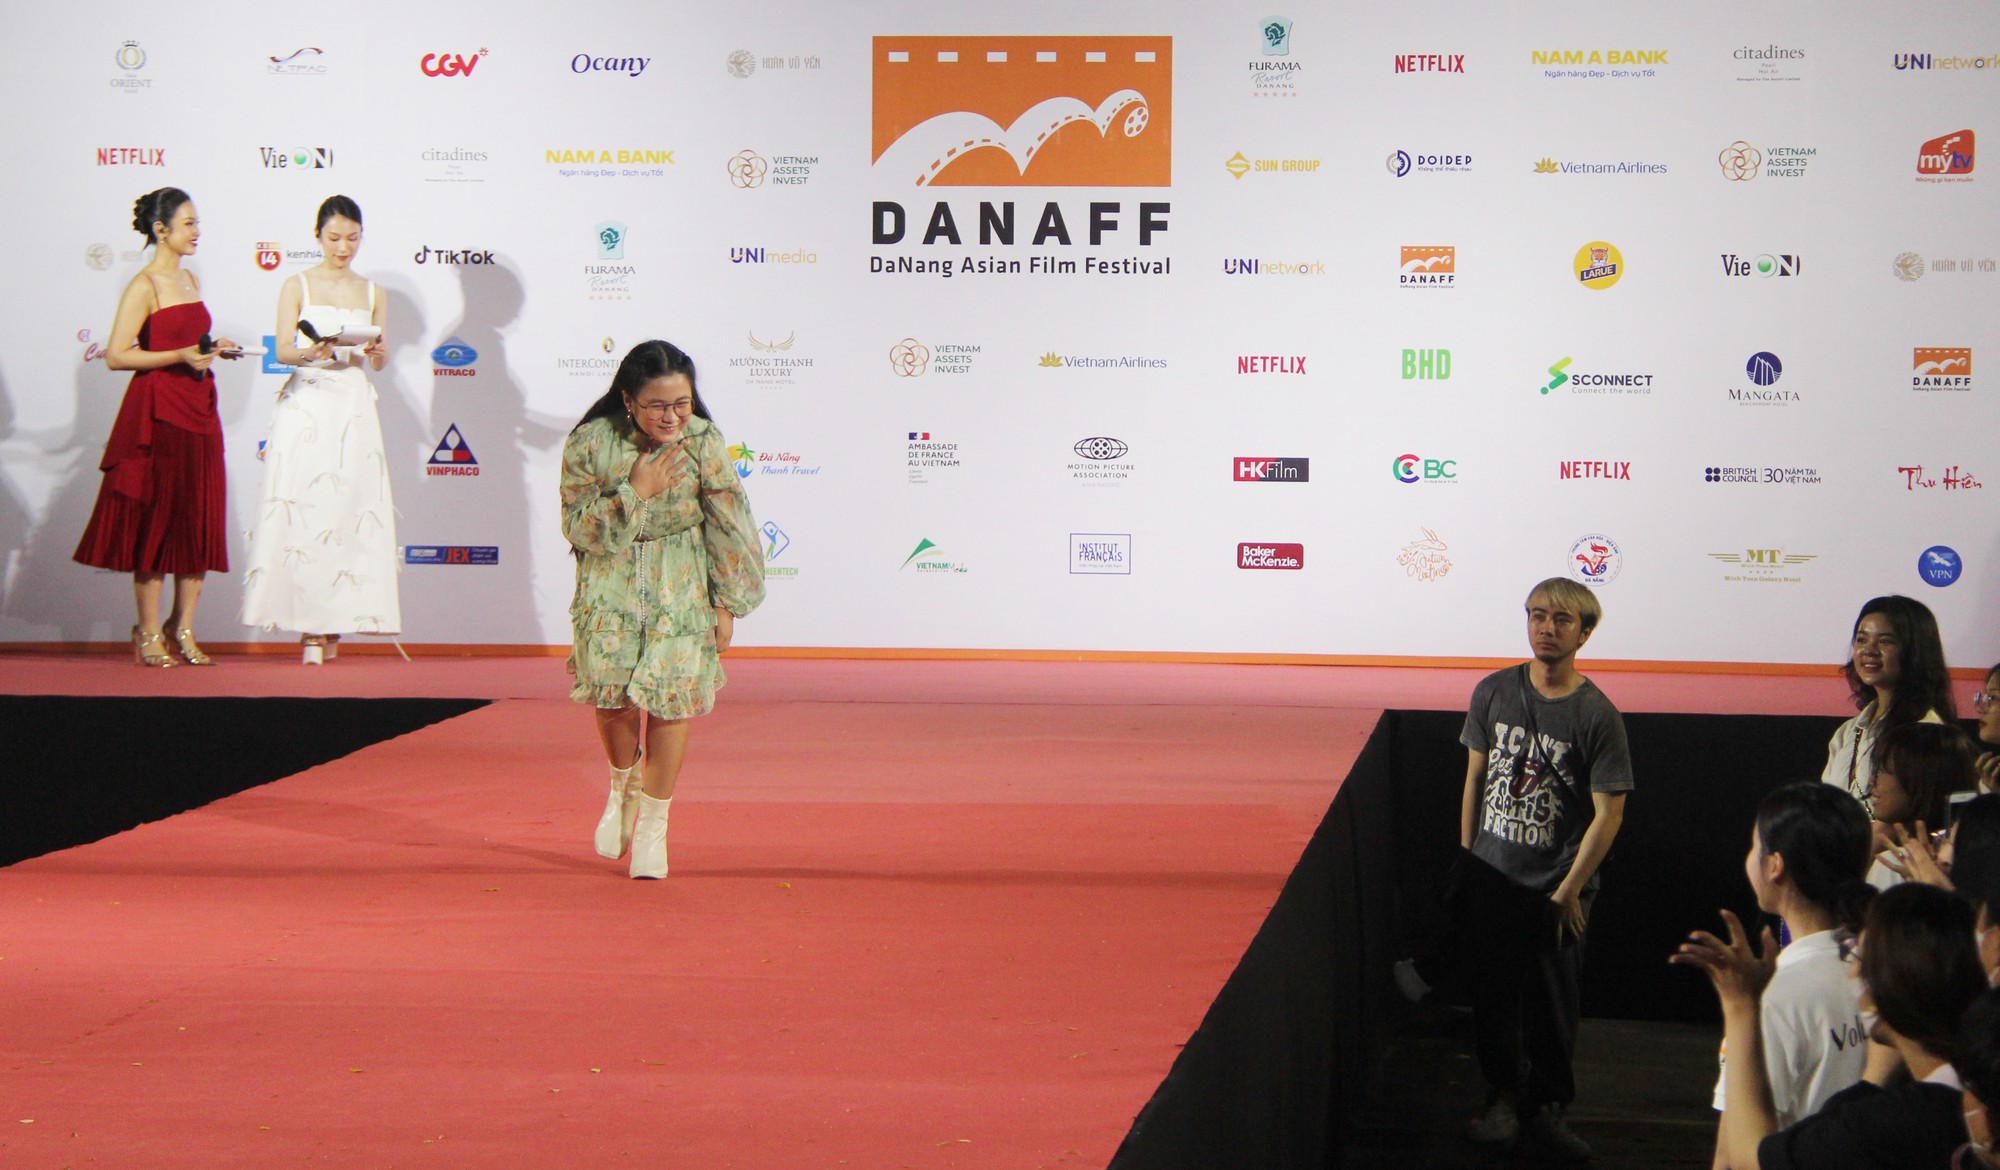 Diễn viên Nhà bà Nữ, Bố Già tham dự Liên hoan phim DANAFF I - Ảnh 5.